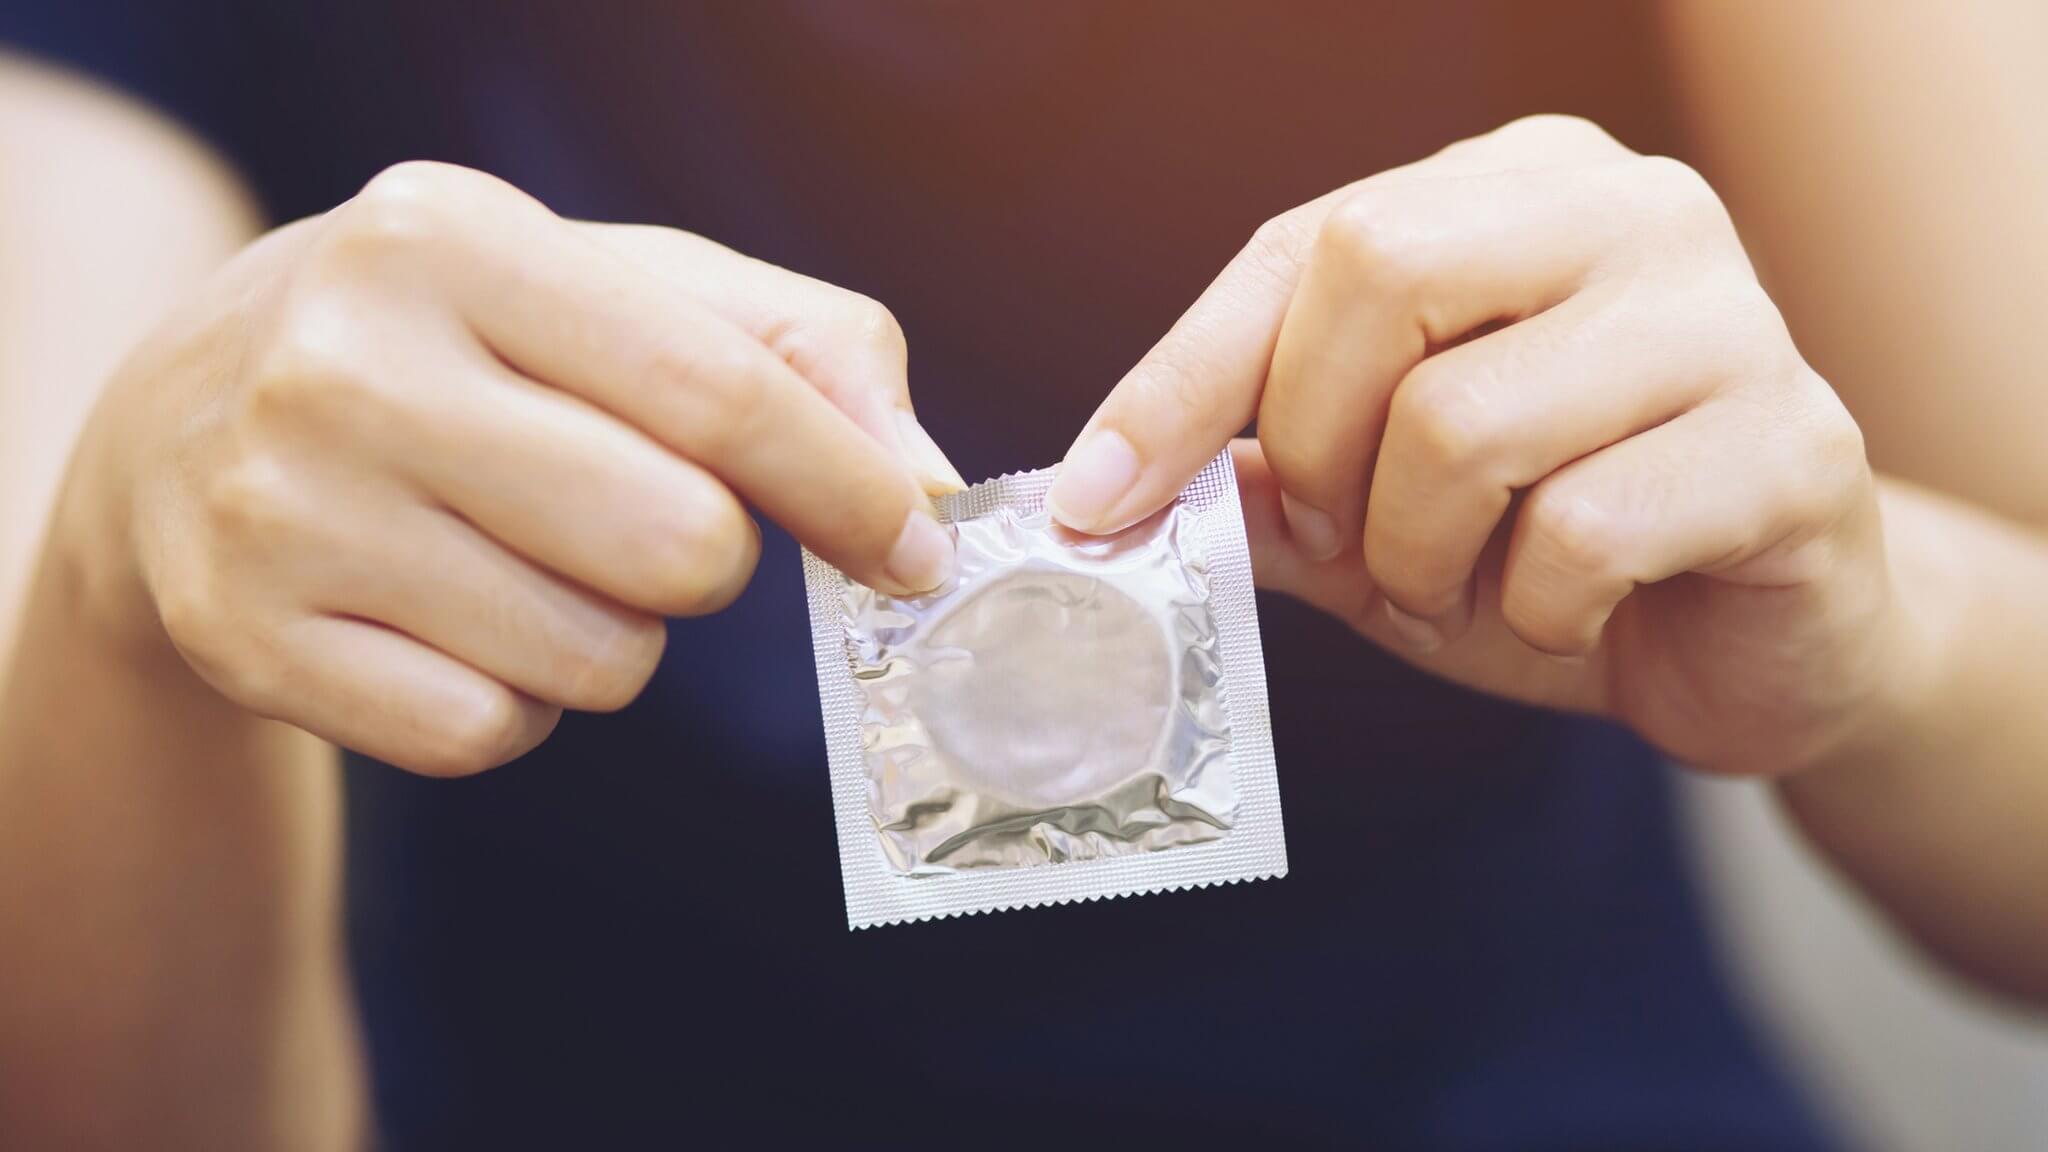 Лечение. Лучший способ предотвратить гонорею — использовать презервативы во время любой половой жизни. Изображение: BBC. Фото.